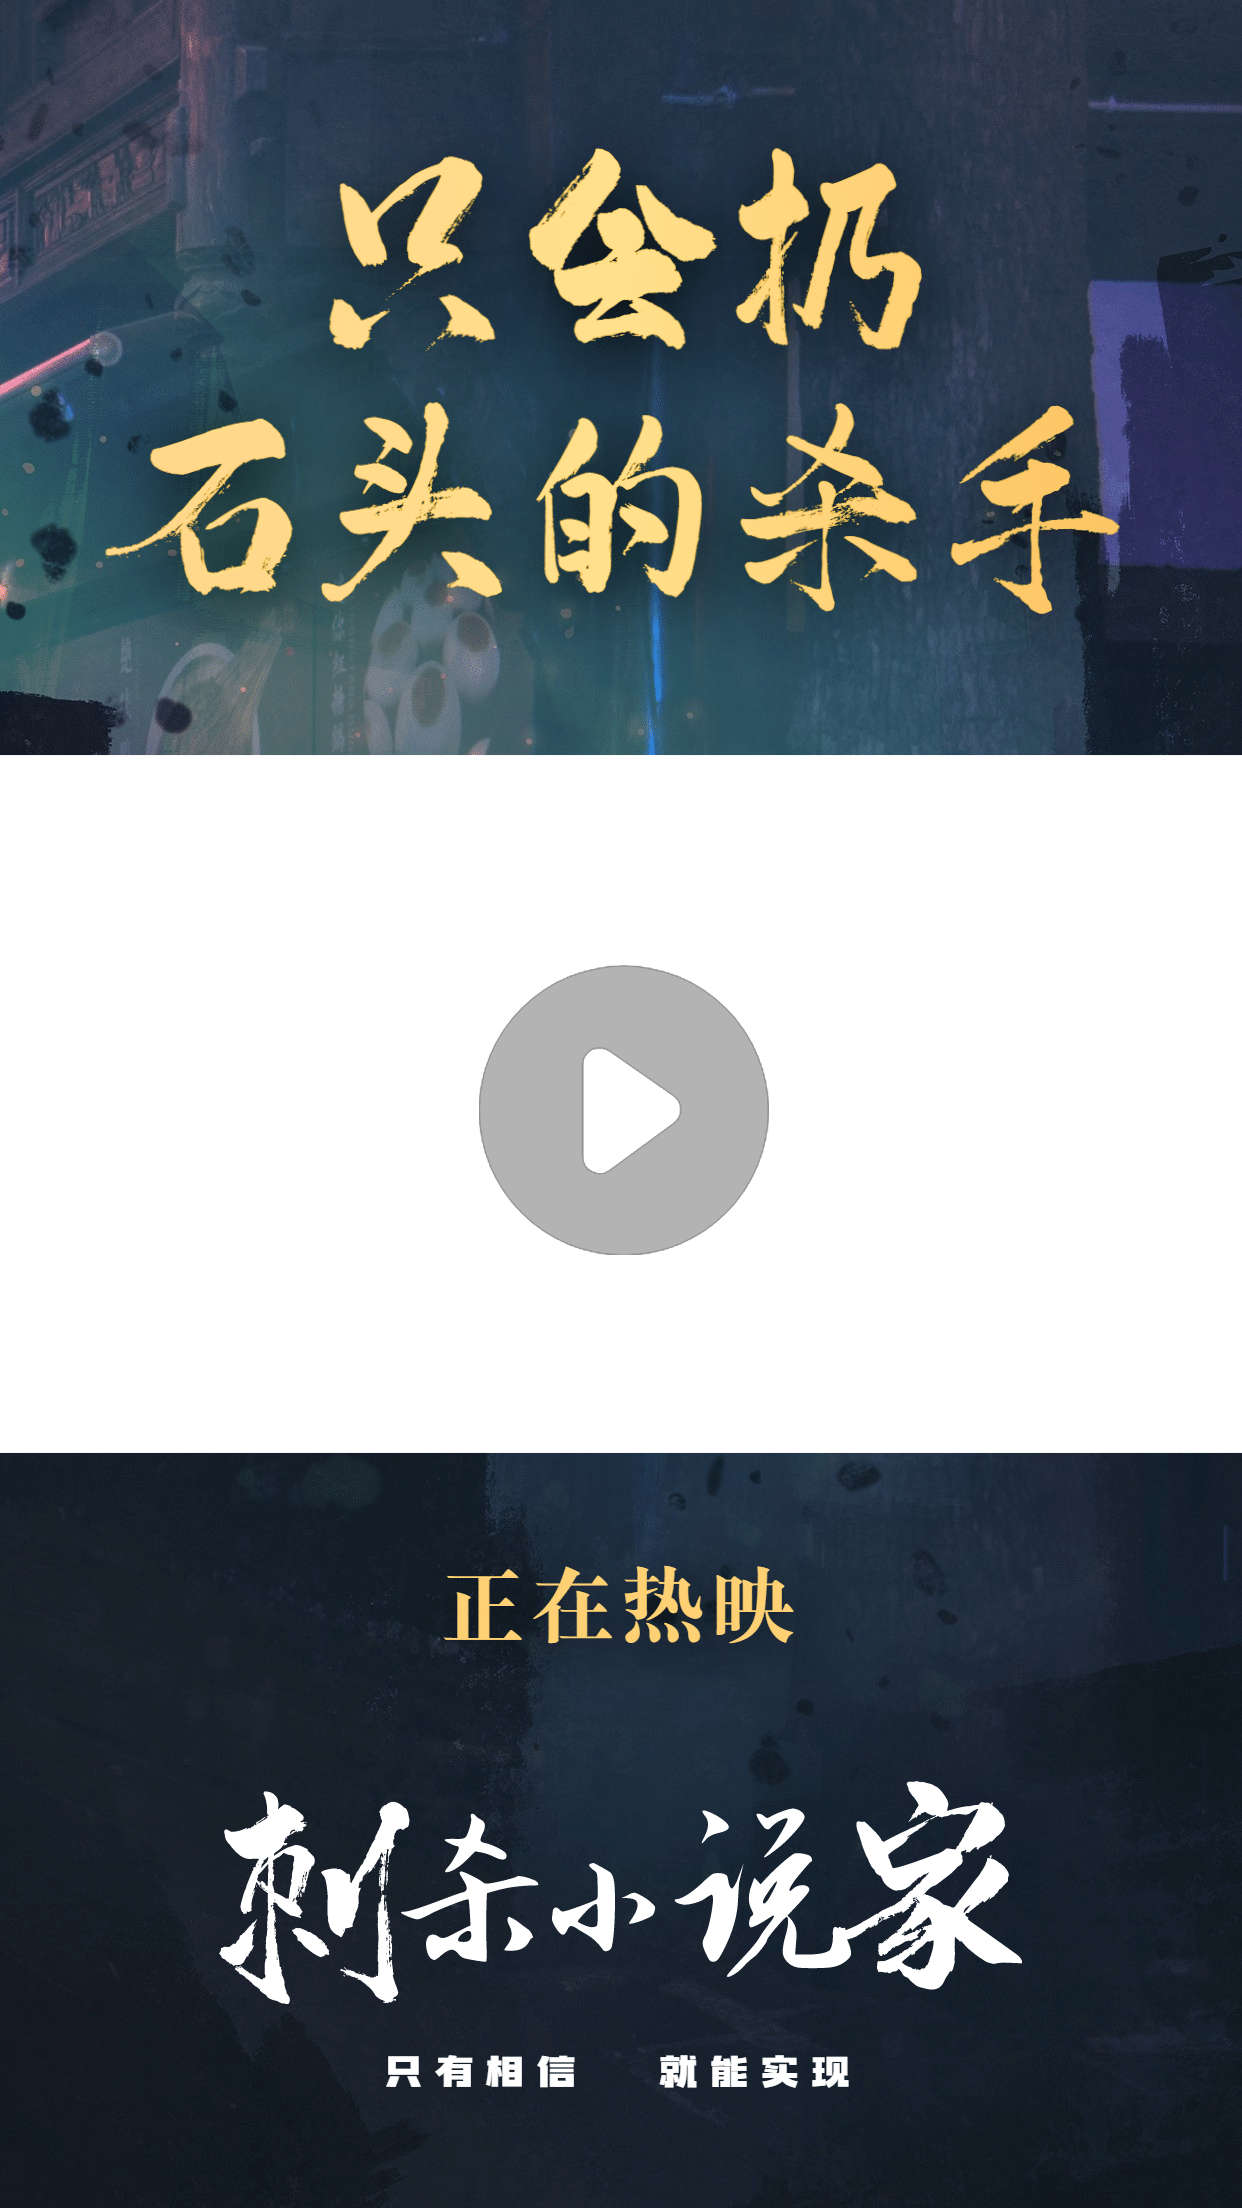 春节档电影分享推荐娱乐视频边框